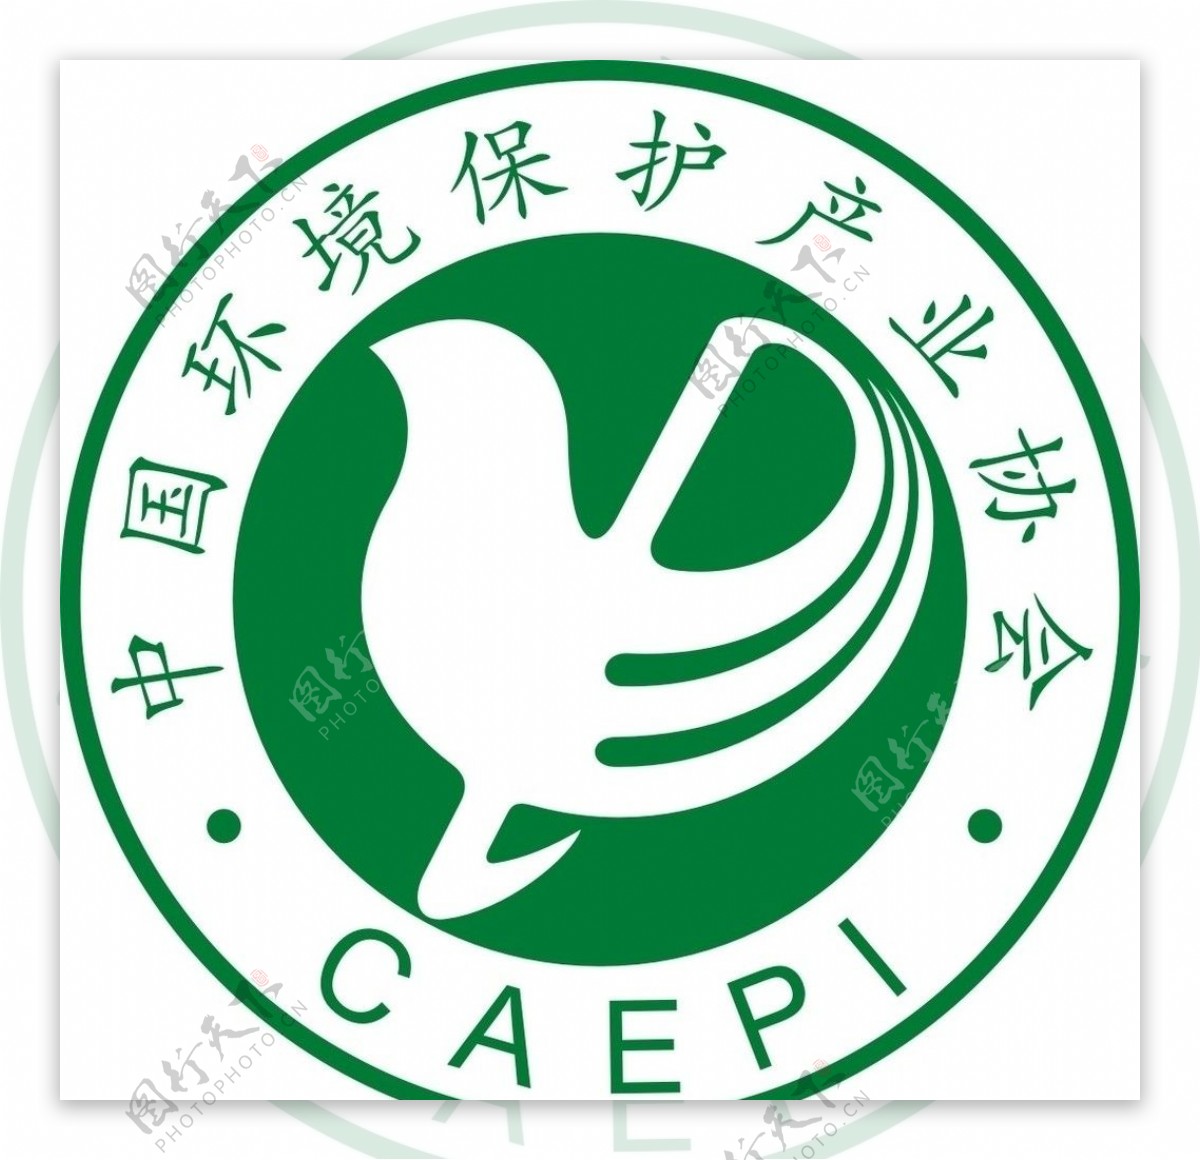 中国环境保护产业协会图片